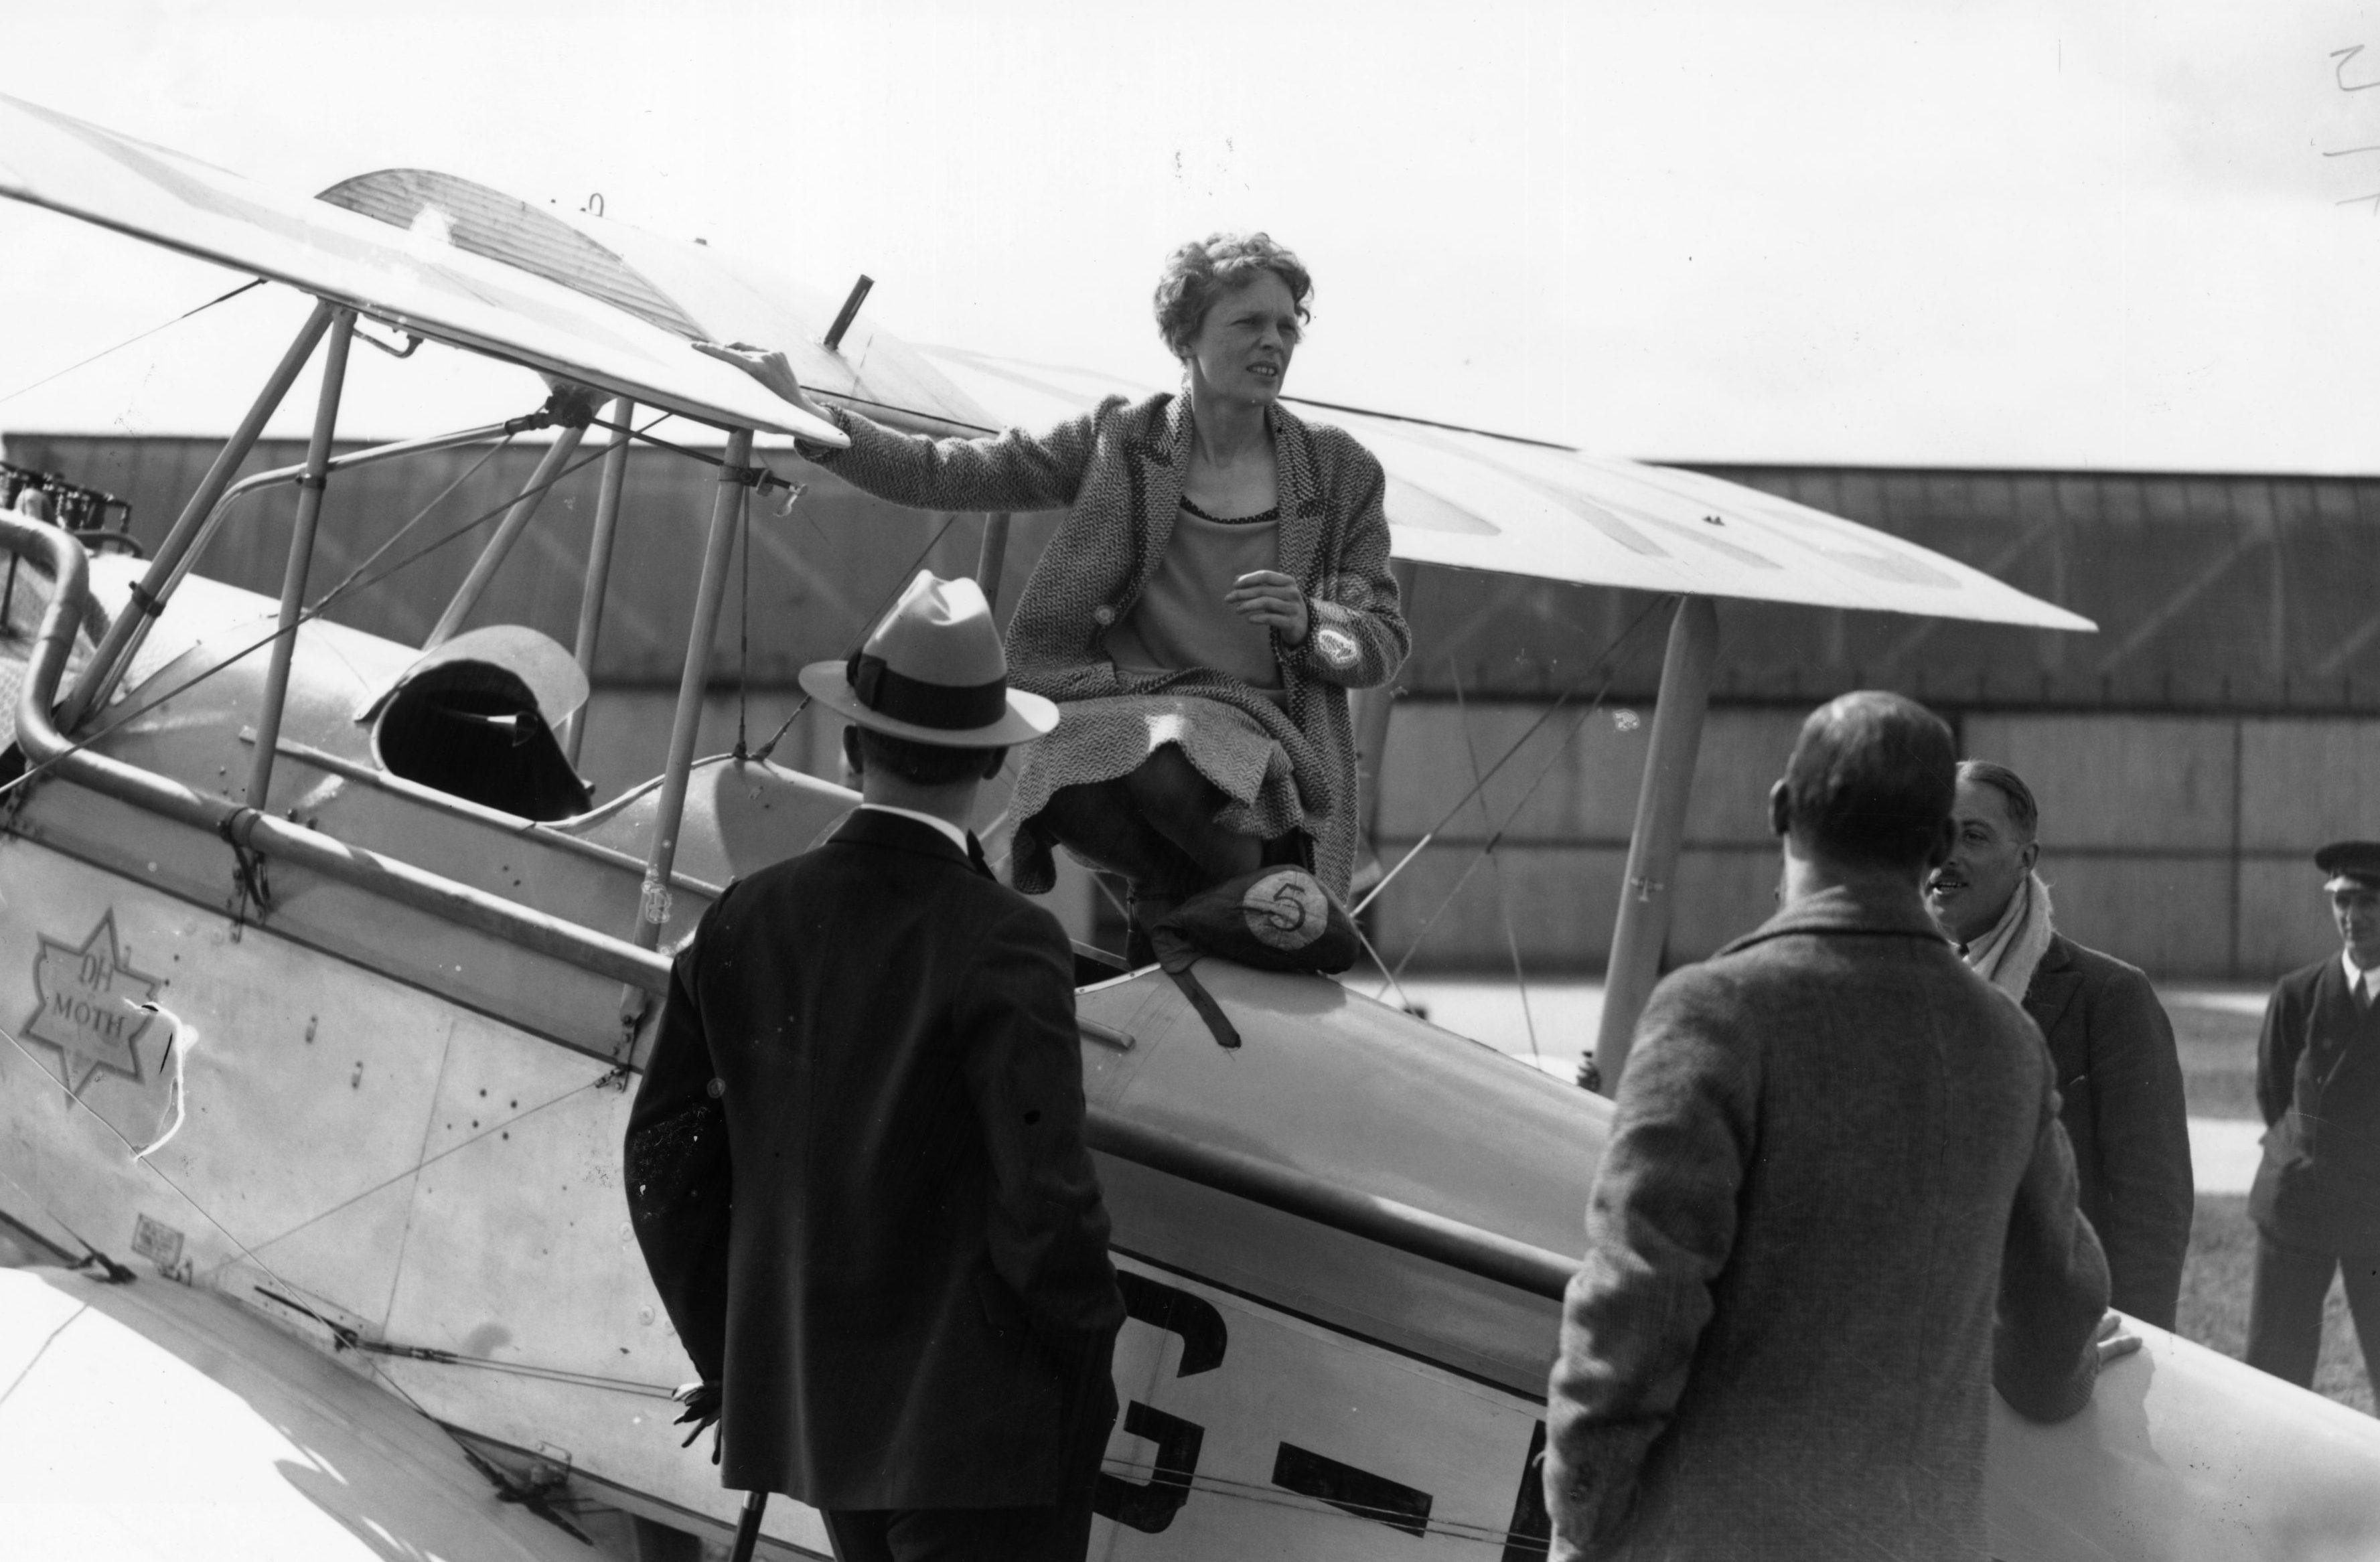 Amelia Earhart & George Putnam